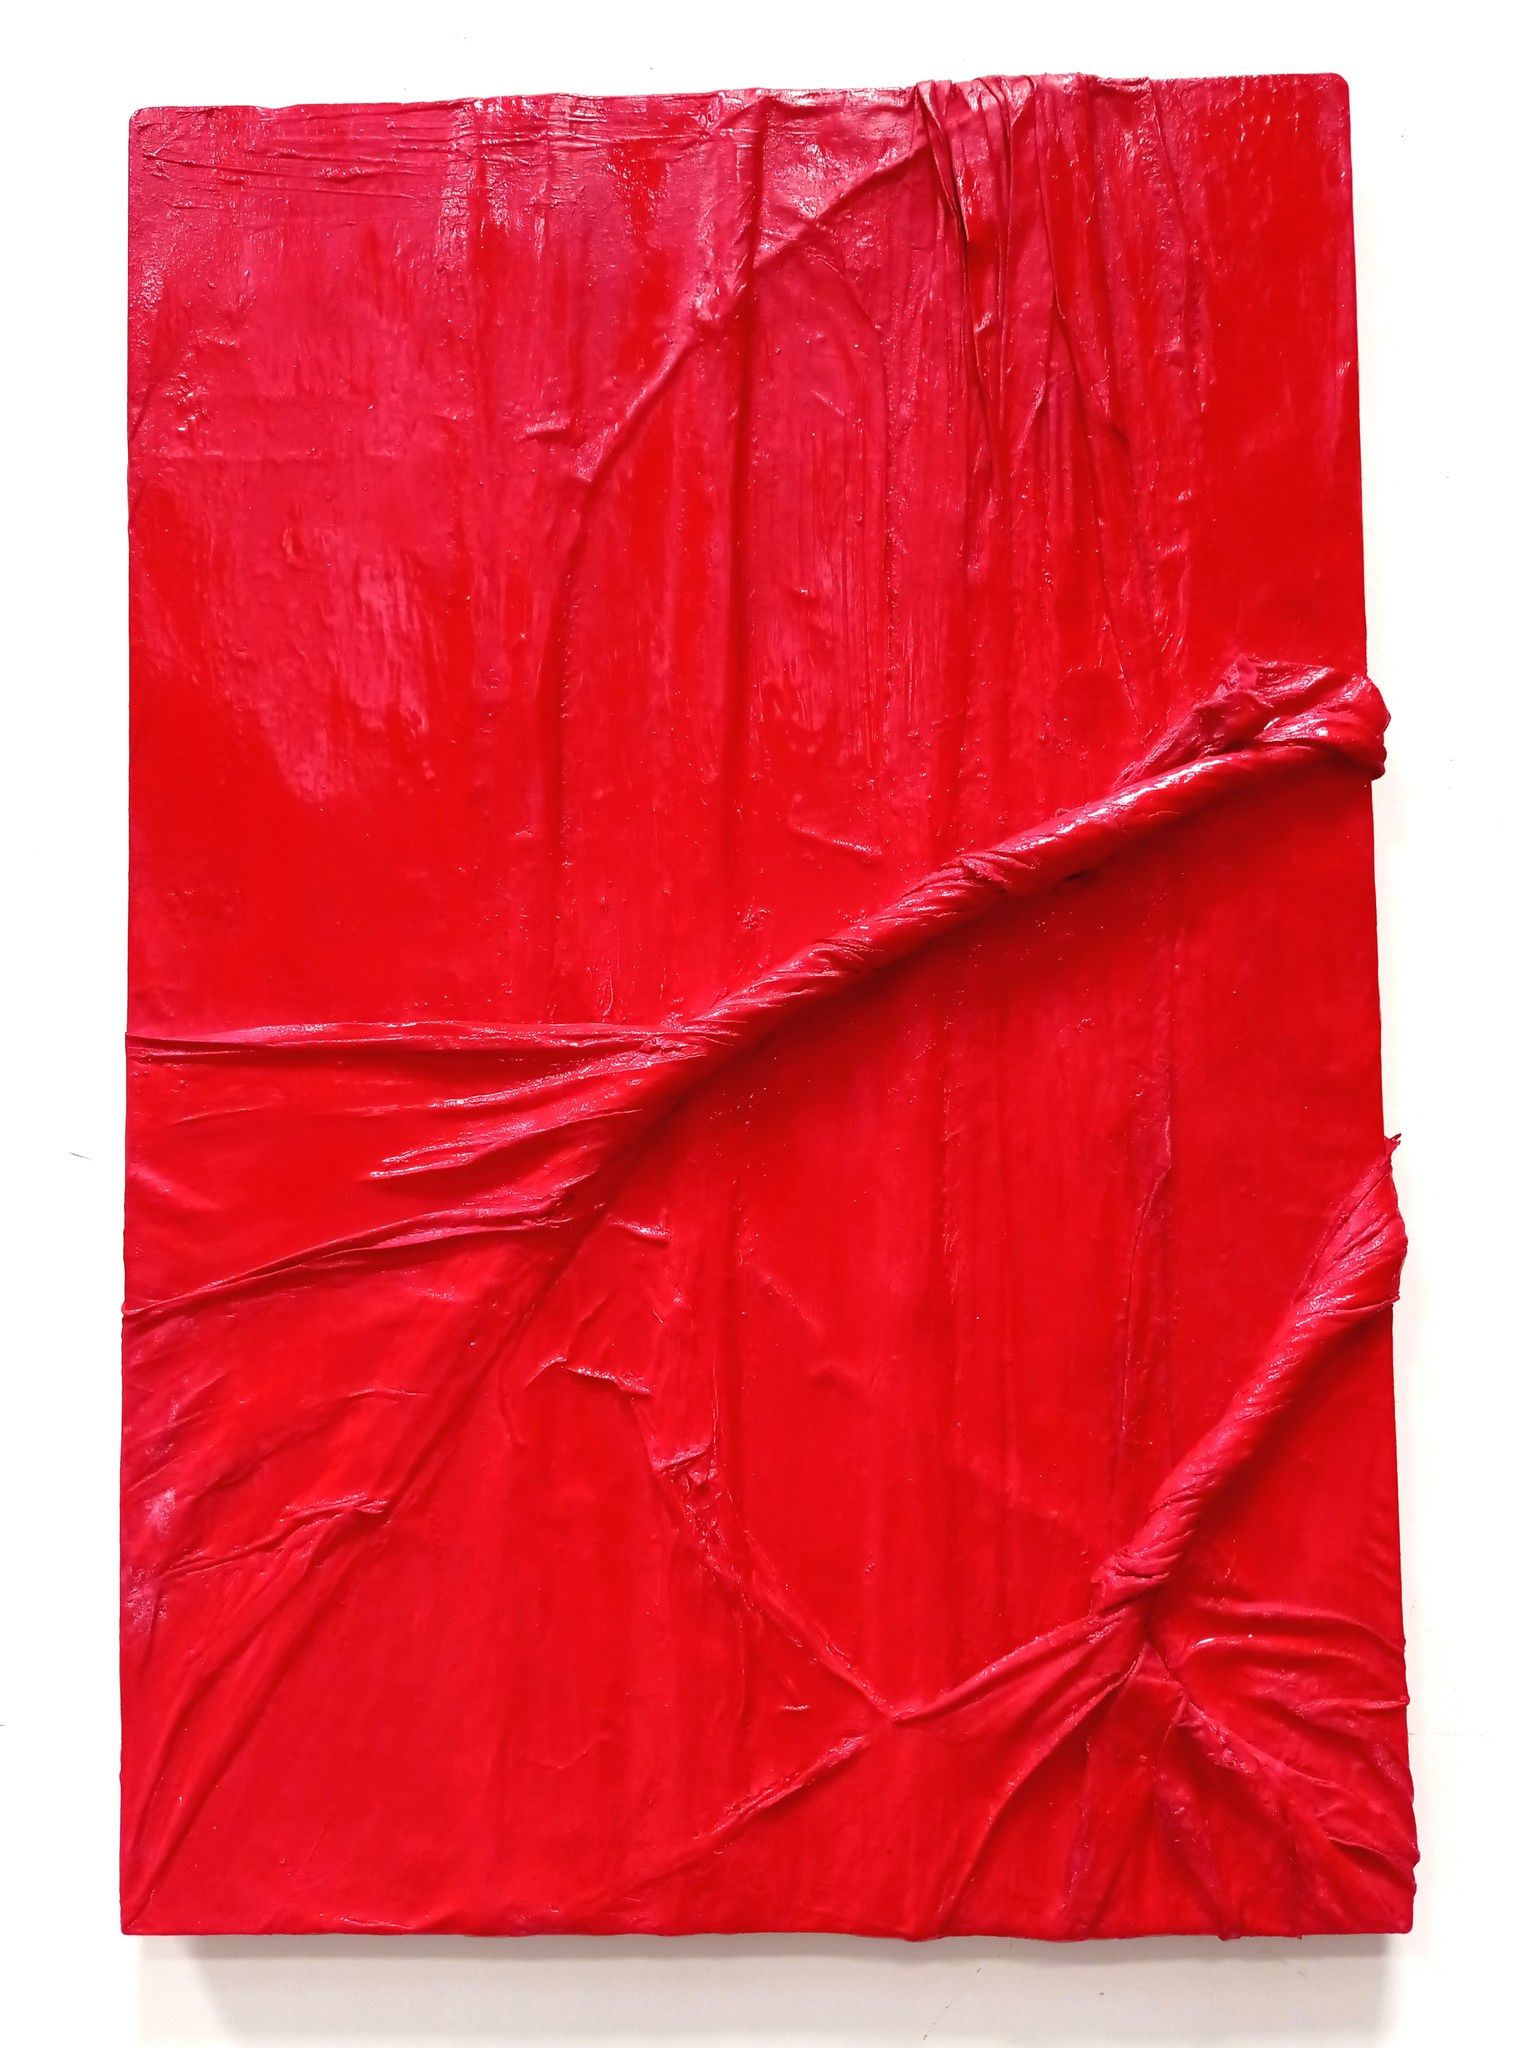 PROMOZIONE #artistadelmese MIXED MEDIA  MARCO BISCUOLO ' ORGANIC VERMILLION 249 '  dimensioni L 61 x H 90 cm.